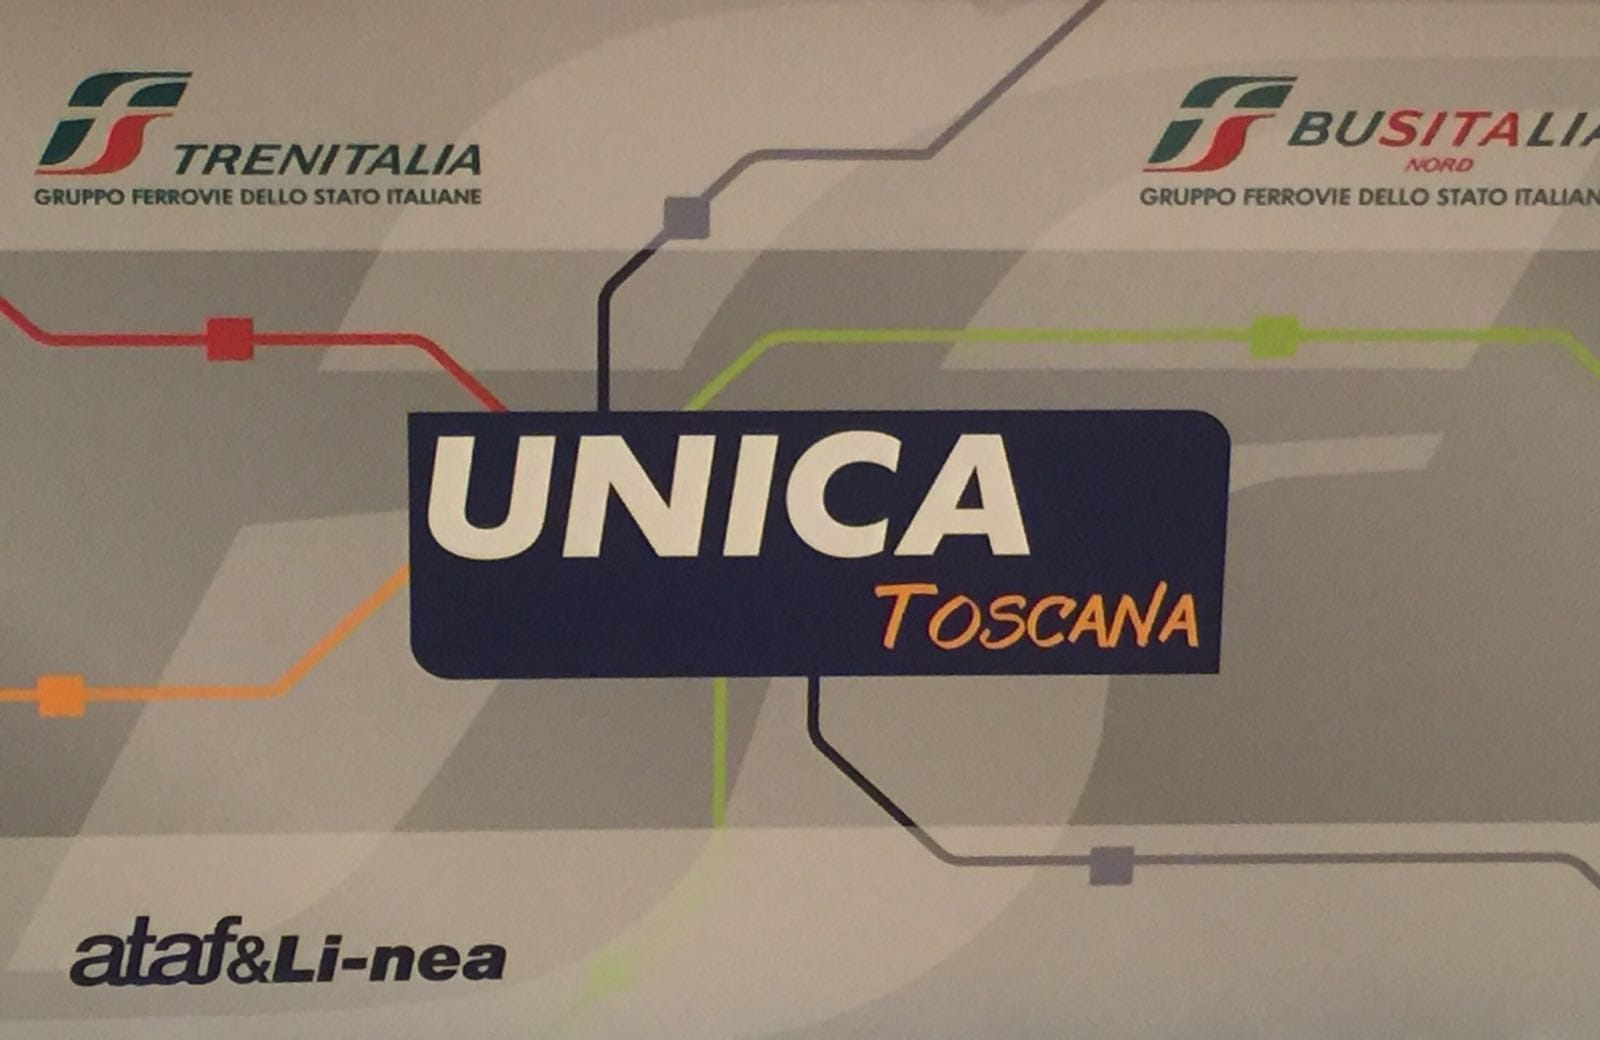 UNICA TOSCANA: da Pasqua in funzione la card di Busitalia, Trenitalia, Ataf&Linea